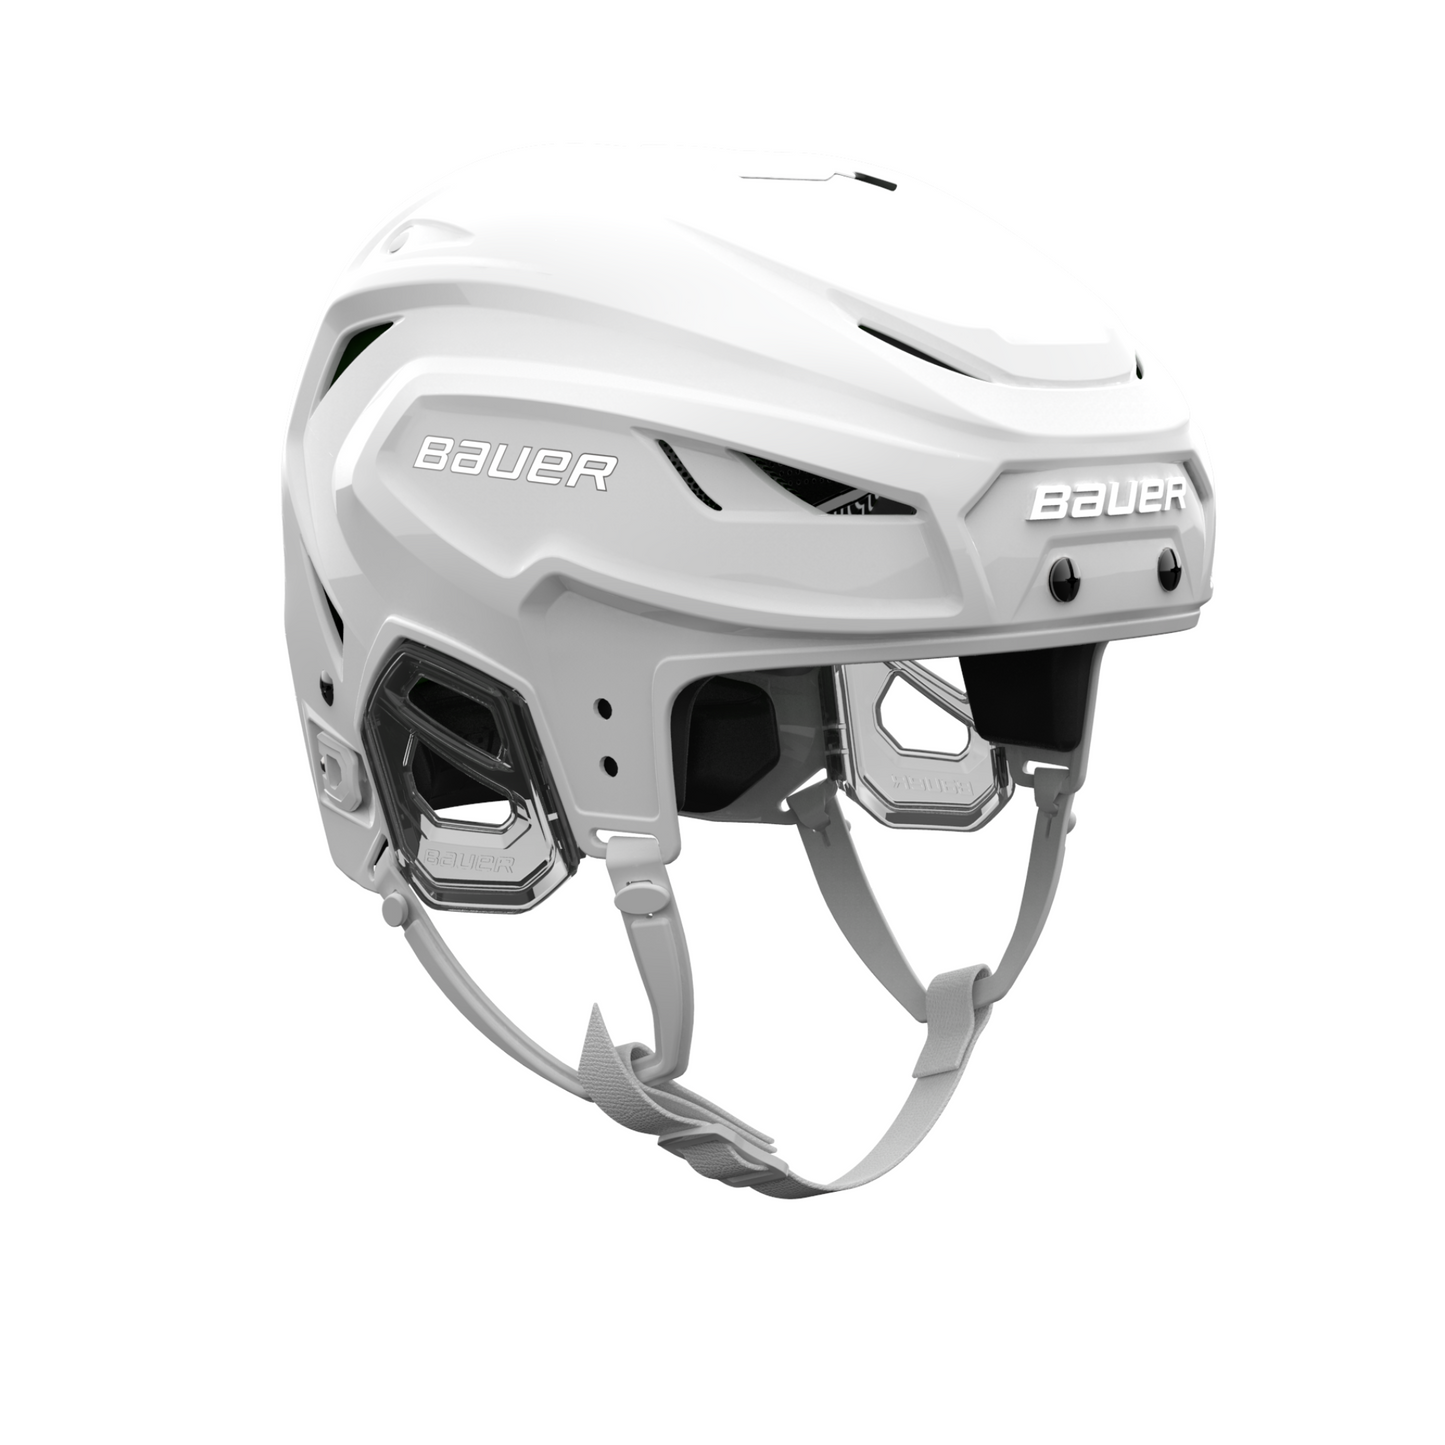 Bauer Vapor Hyperlite 2 Senior Hockey Helmet